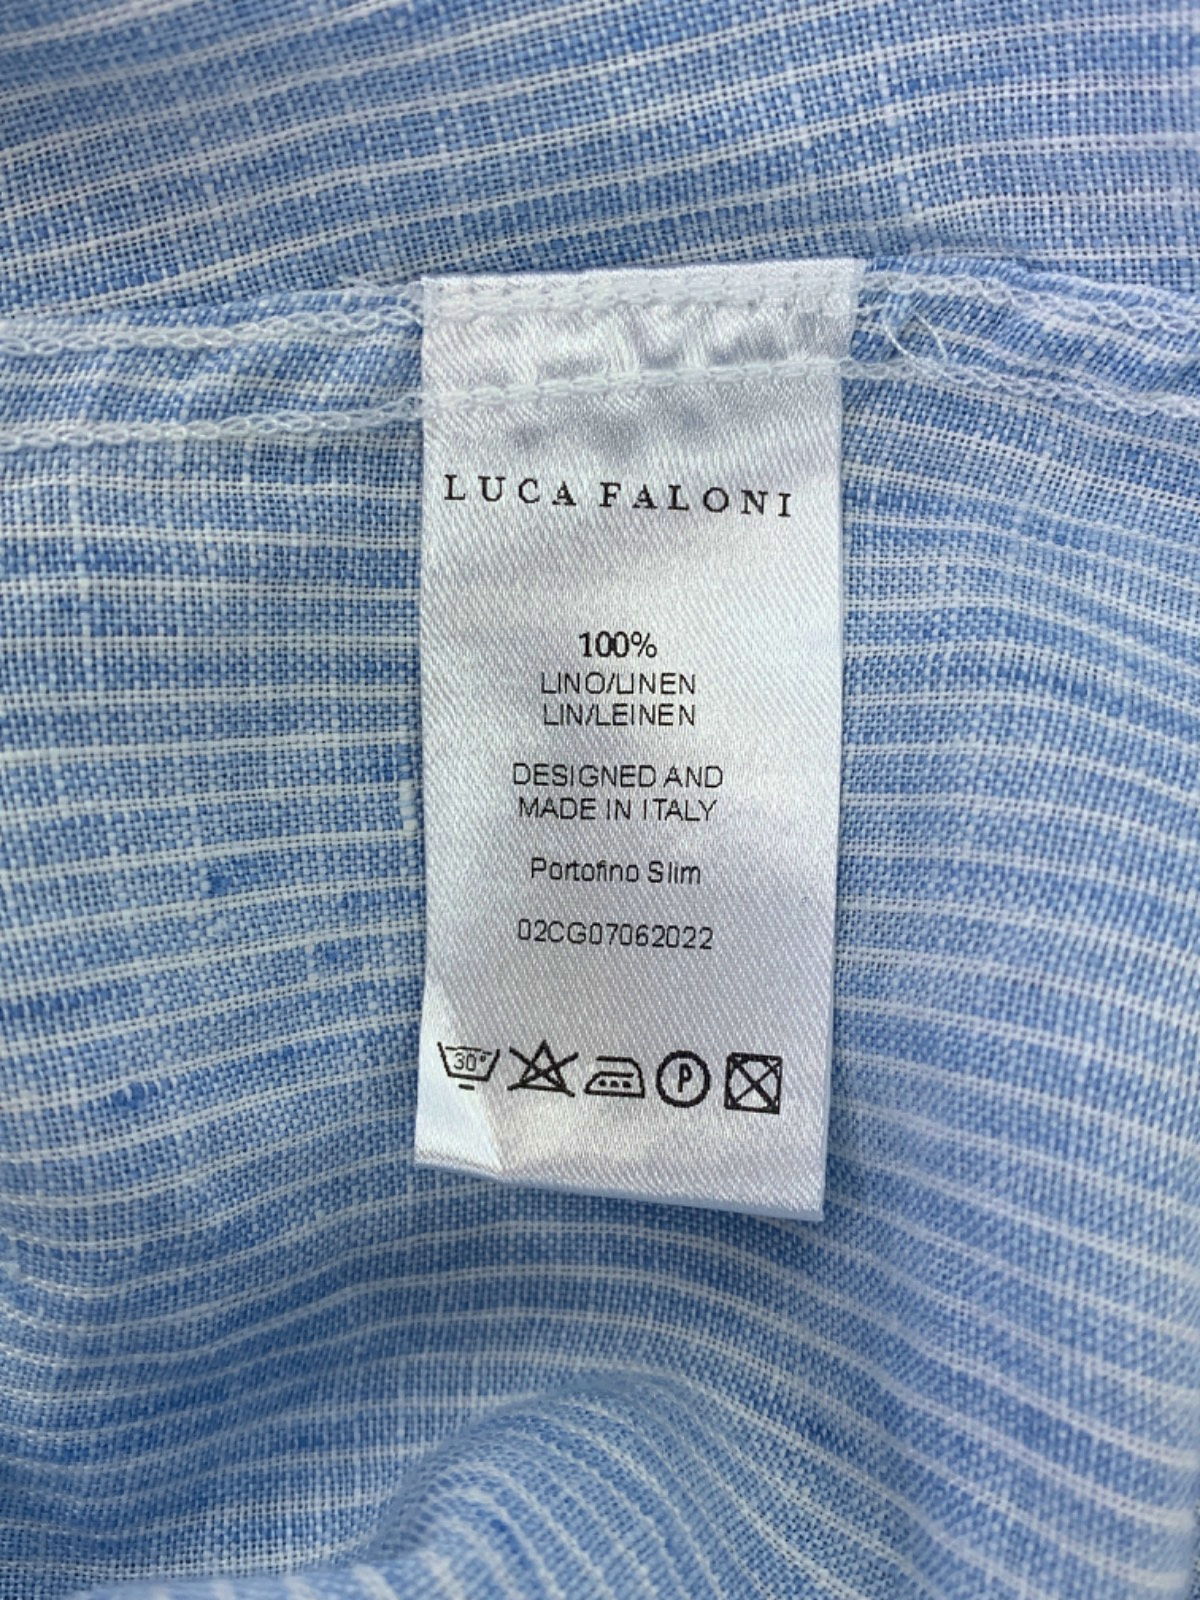 Luca Faloni Light Blue Striped Linen Portofino Slim Shirt EU 42